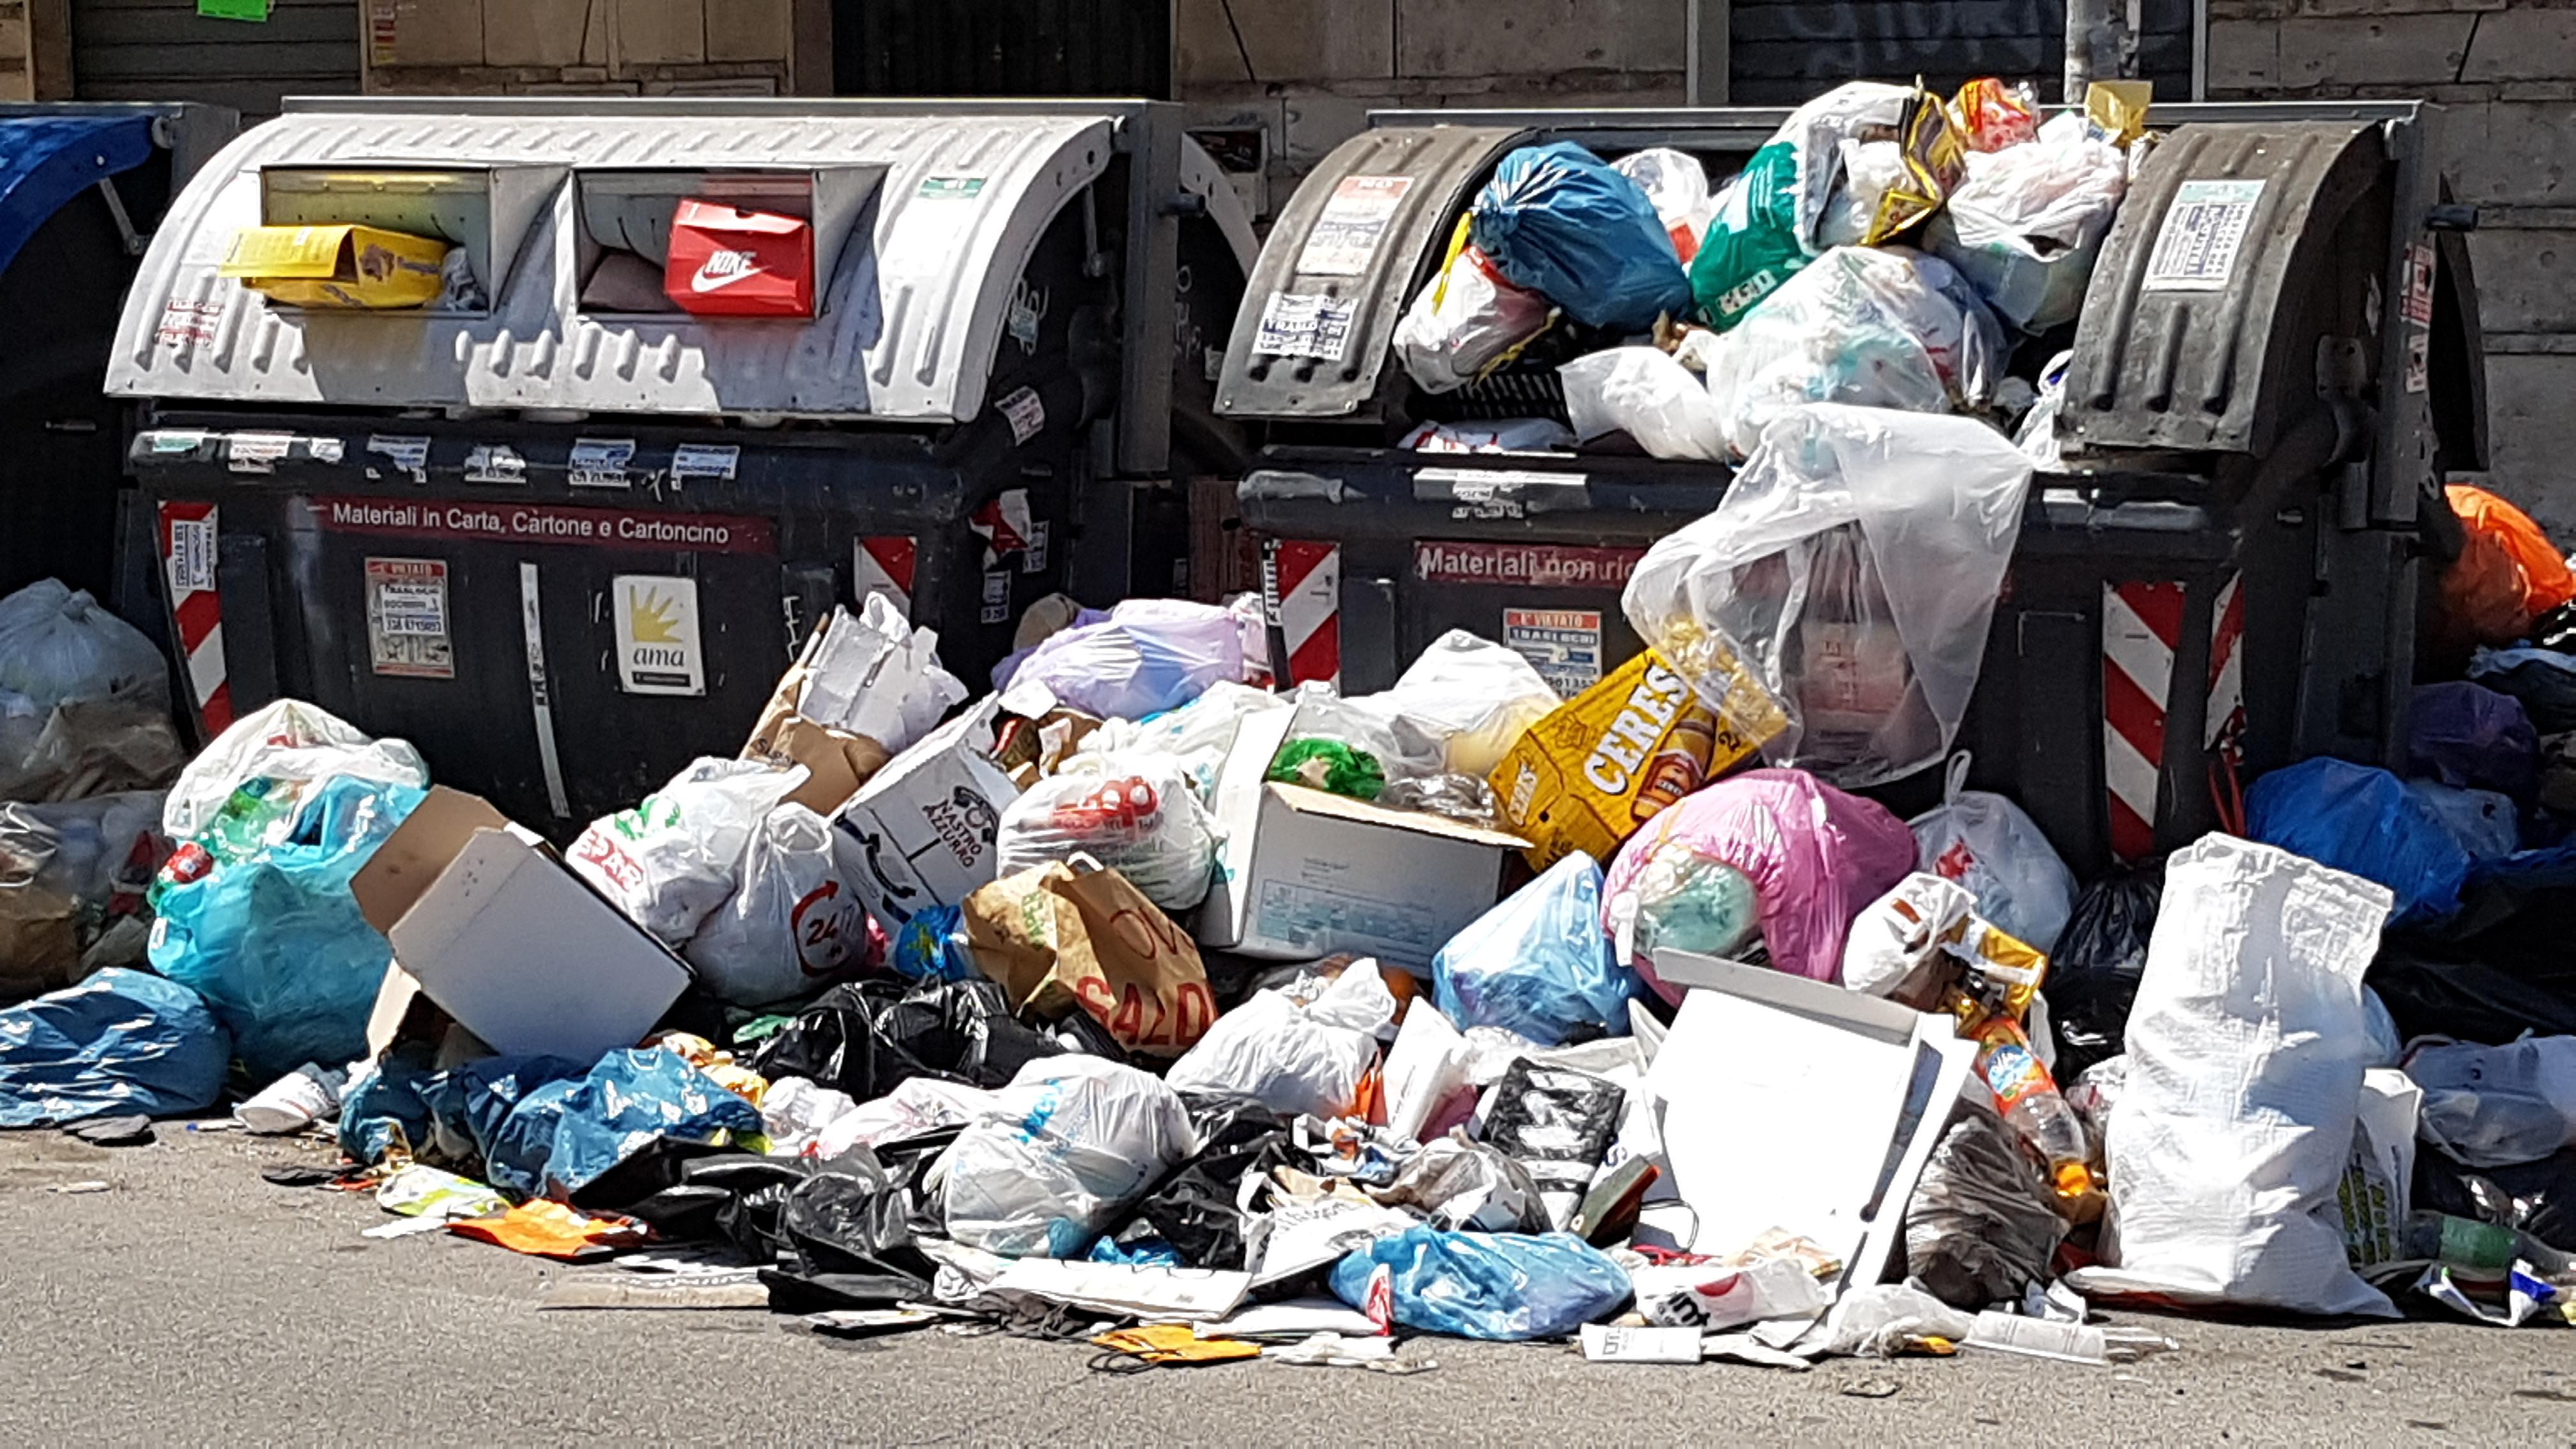 Roma invadida de basura, los lectores se lamentan «Basura de todo tipo